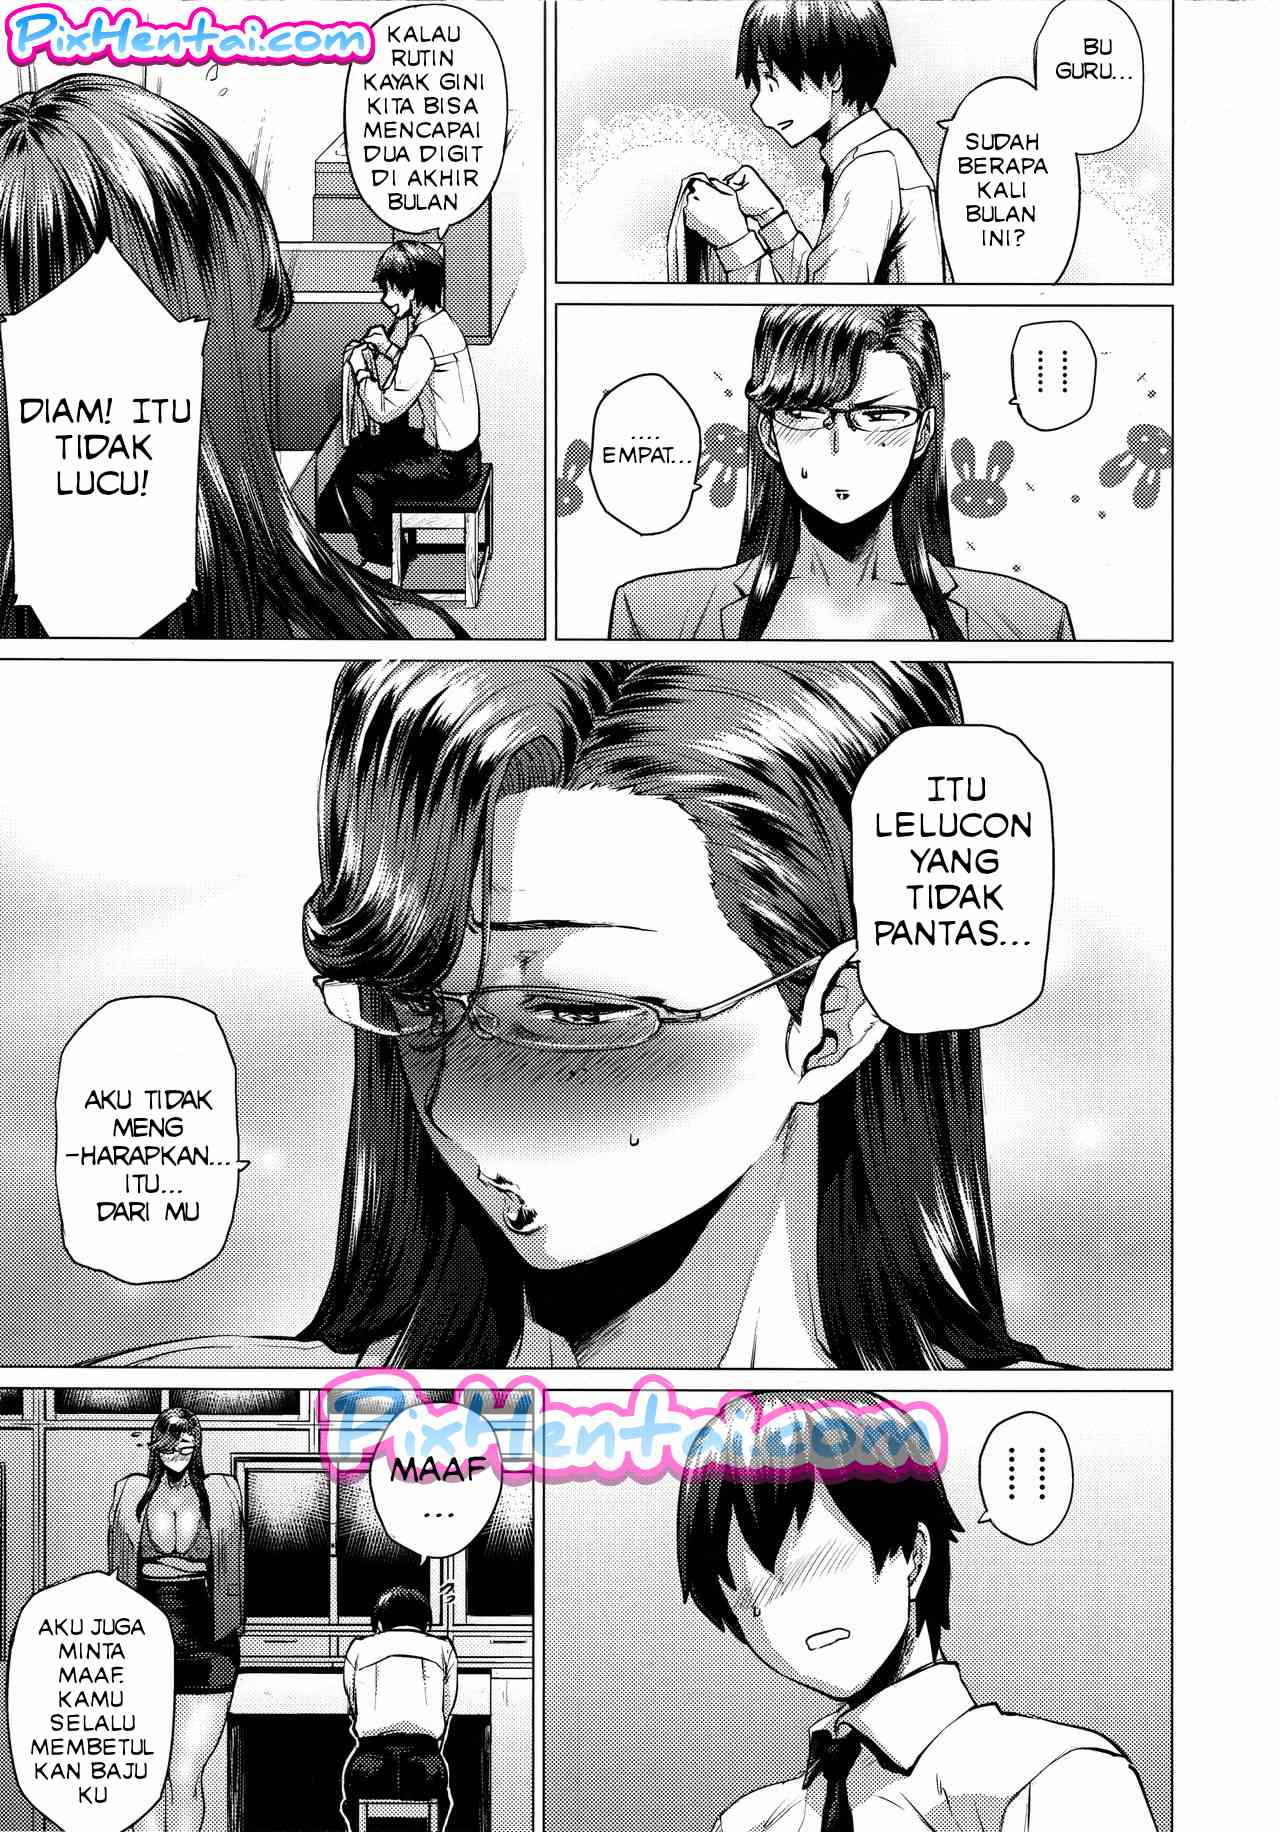 Manga Hentai XXX Komik Sex Bokep Ibu Guru Payudara Jumbo 06